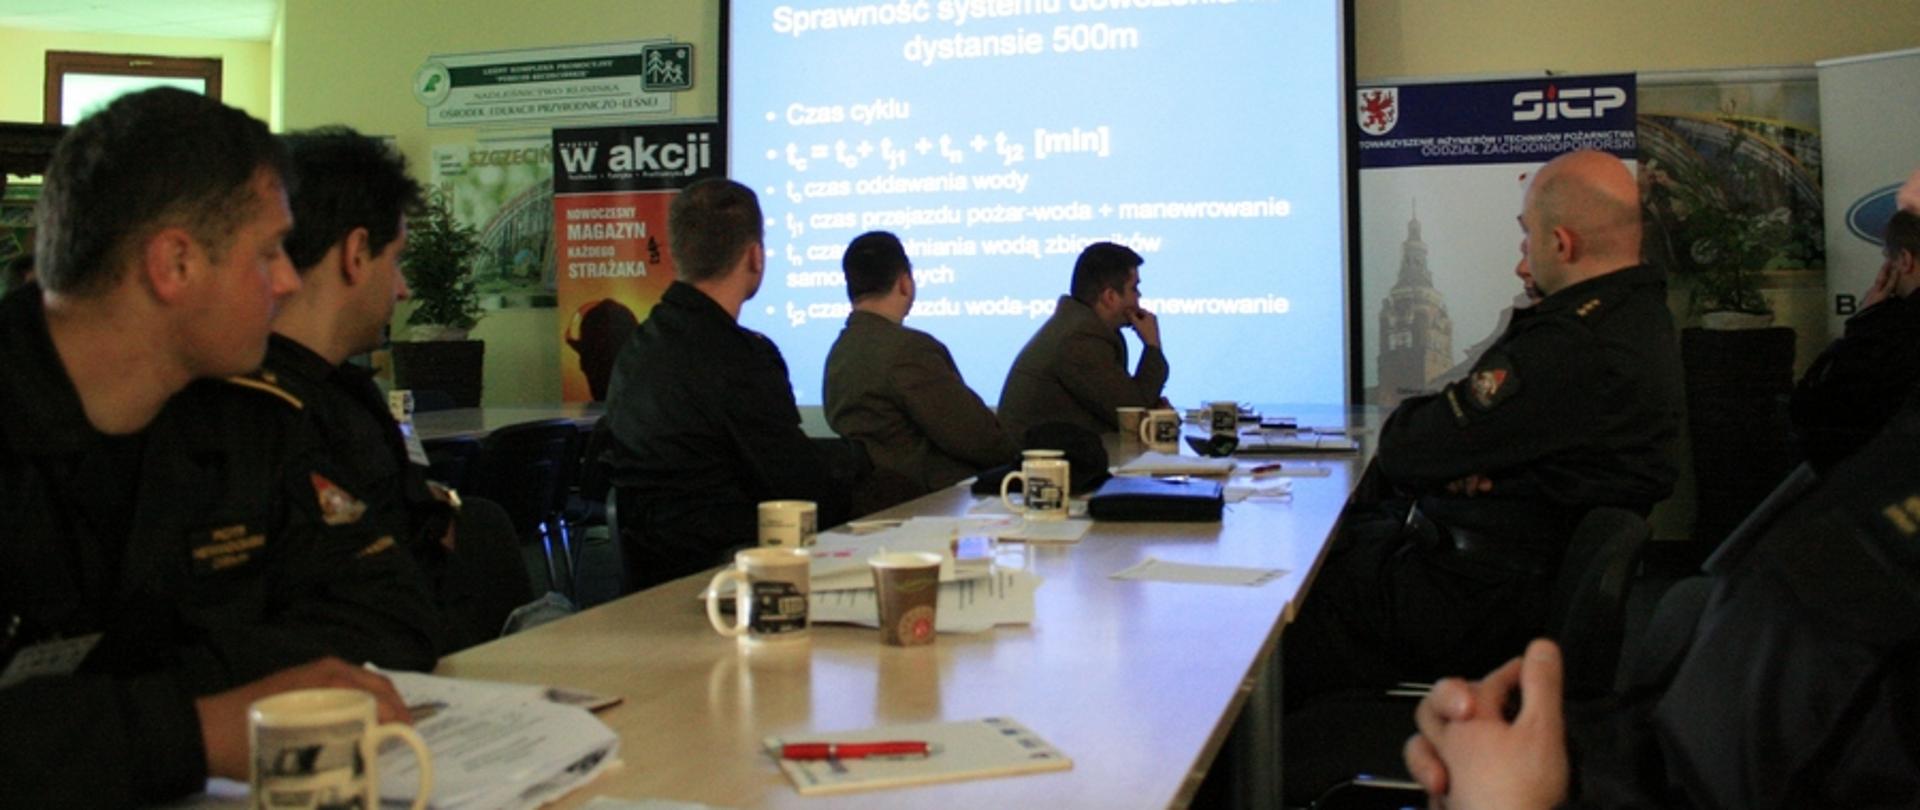 Zdjęcie przedstawia wykład podczas konferencji wraz ze słuchaczami